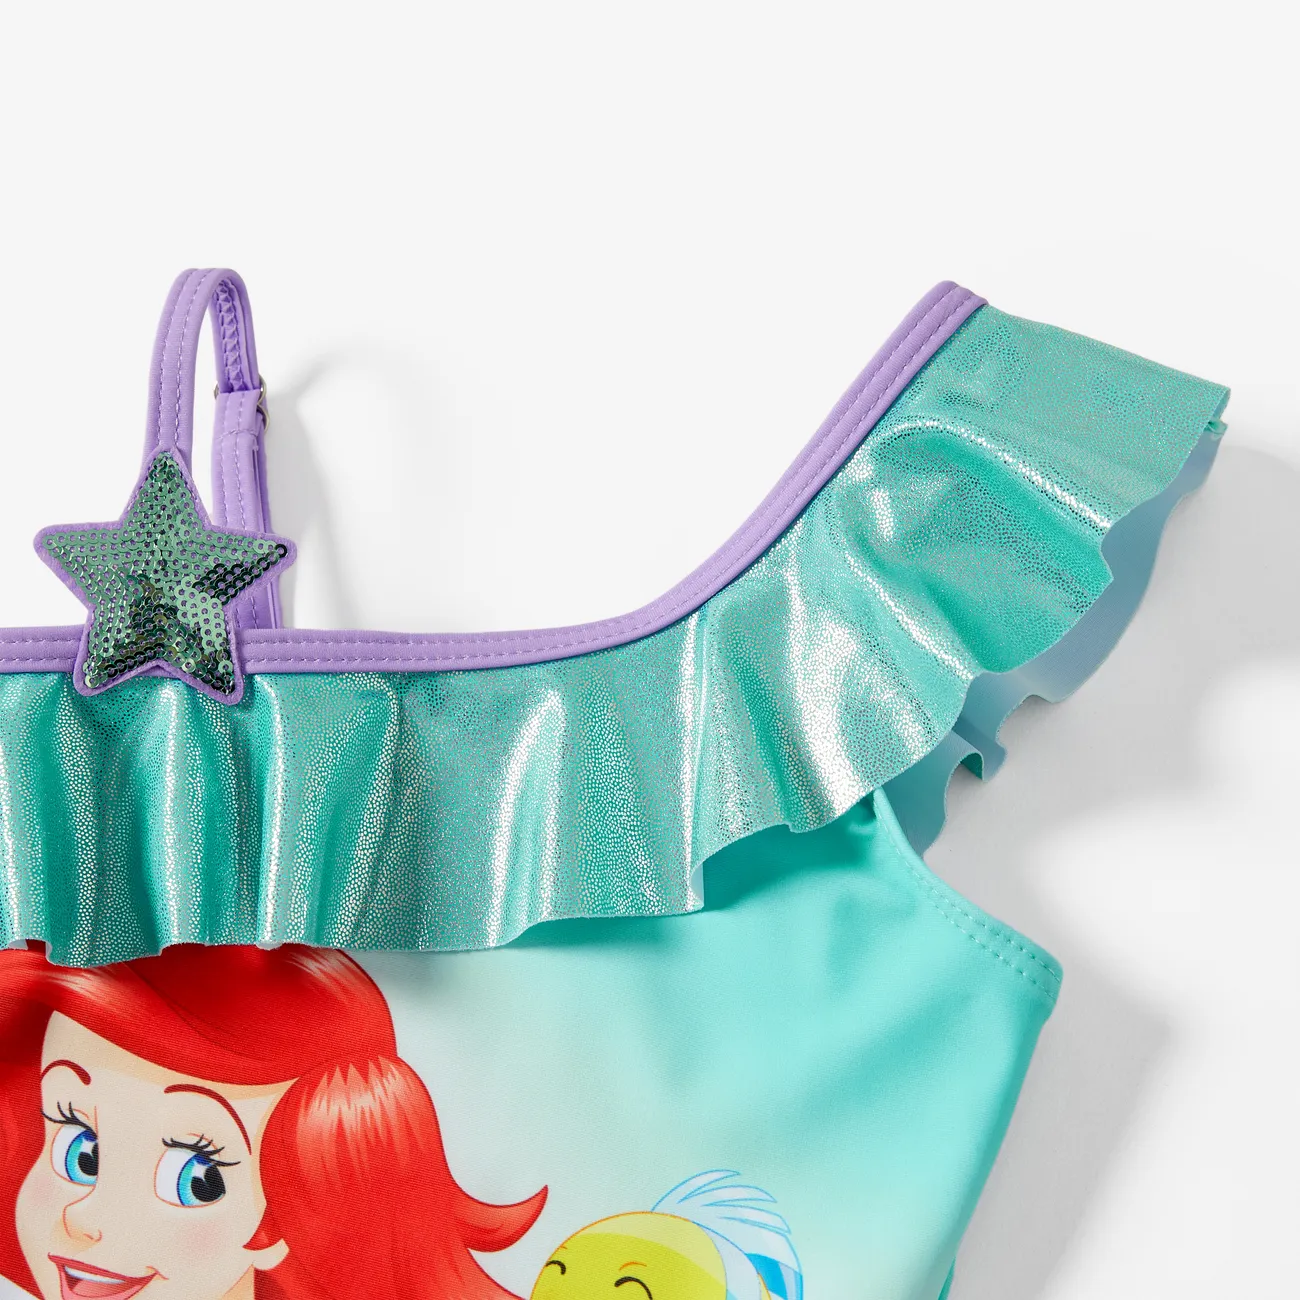 Disney Princess Pascua Chica Volantes Infantil Trajes de baño Verde big image 1